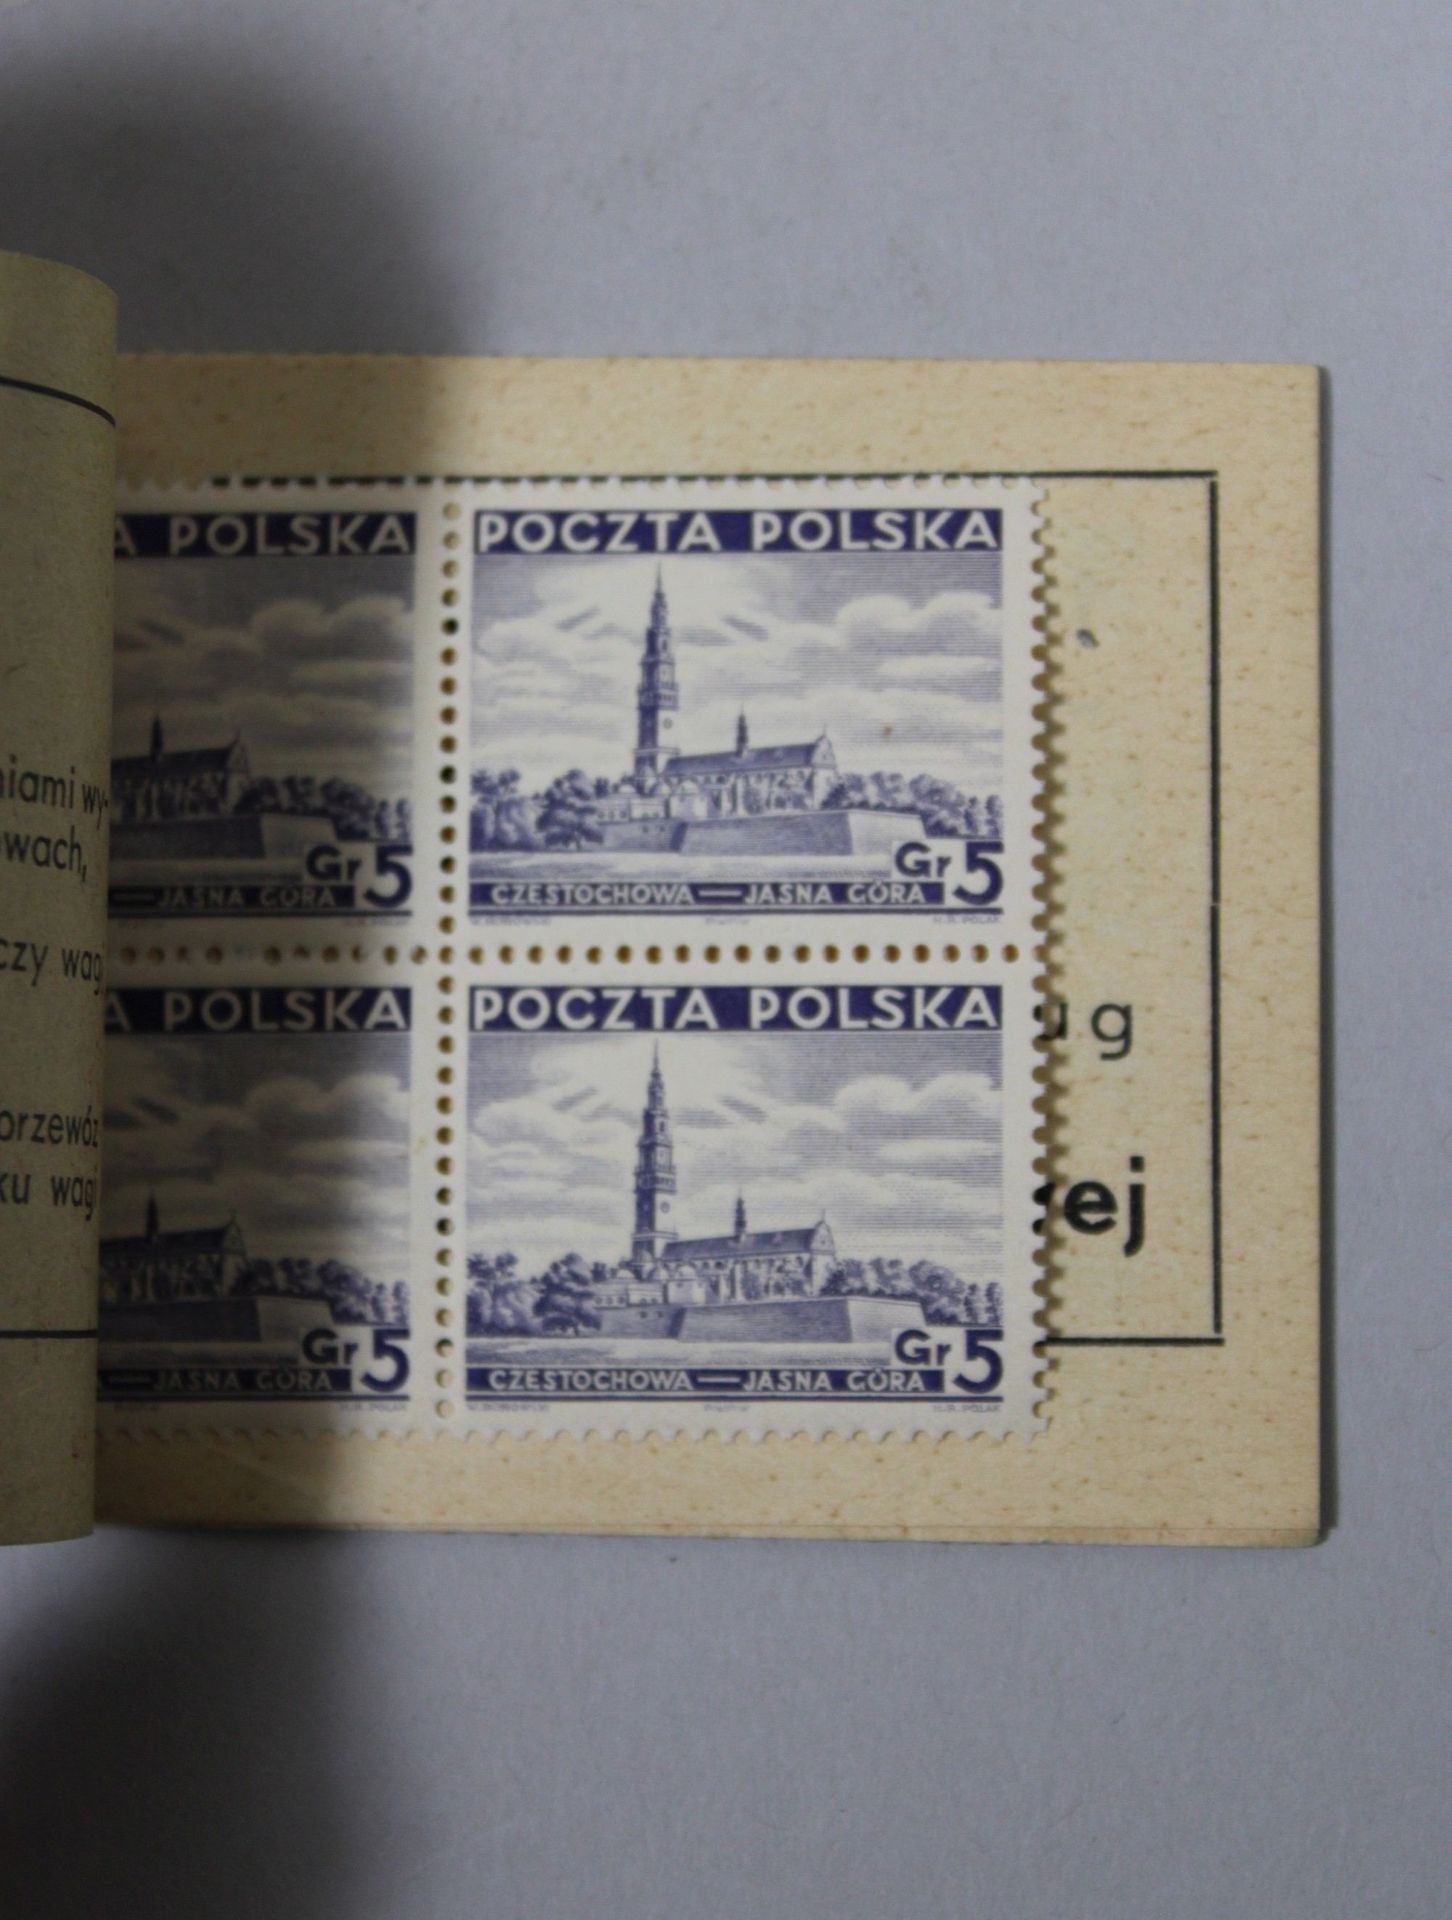 16 Briefmarkenhefte, Polen, 1938, vollständig, guter Zustand. - Image 3 of 3